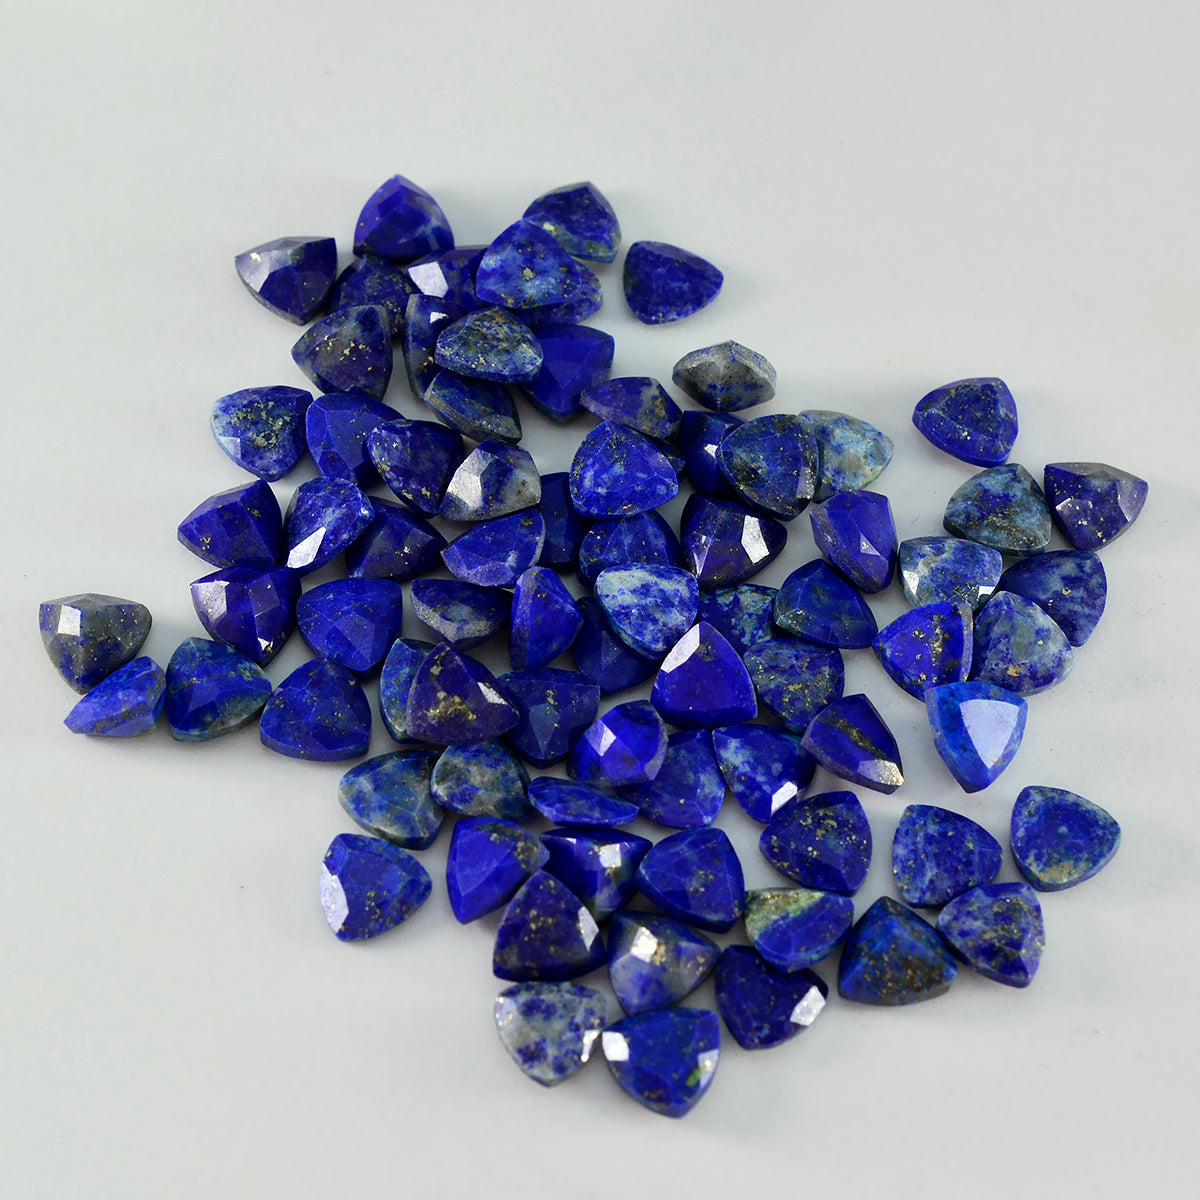 Riyogems 1 Stück natürlicher blauer Lapislazuli, facettiert, 5 x 5 mm, Billionenform, Edelstein von hervorragender Qualität